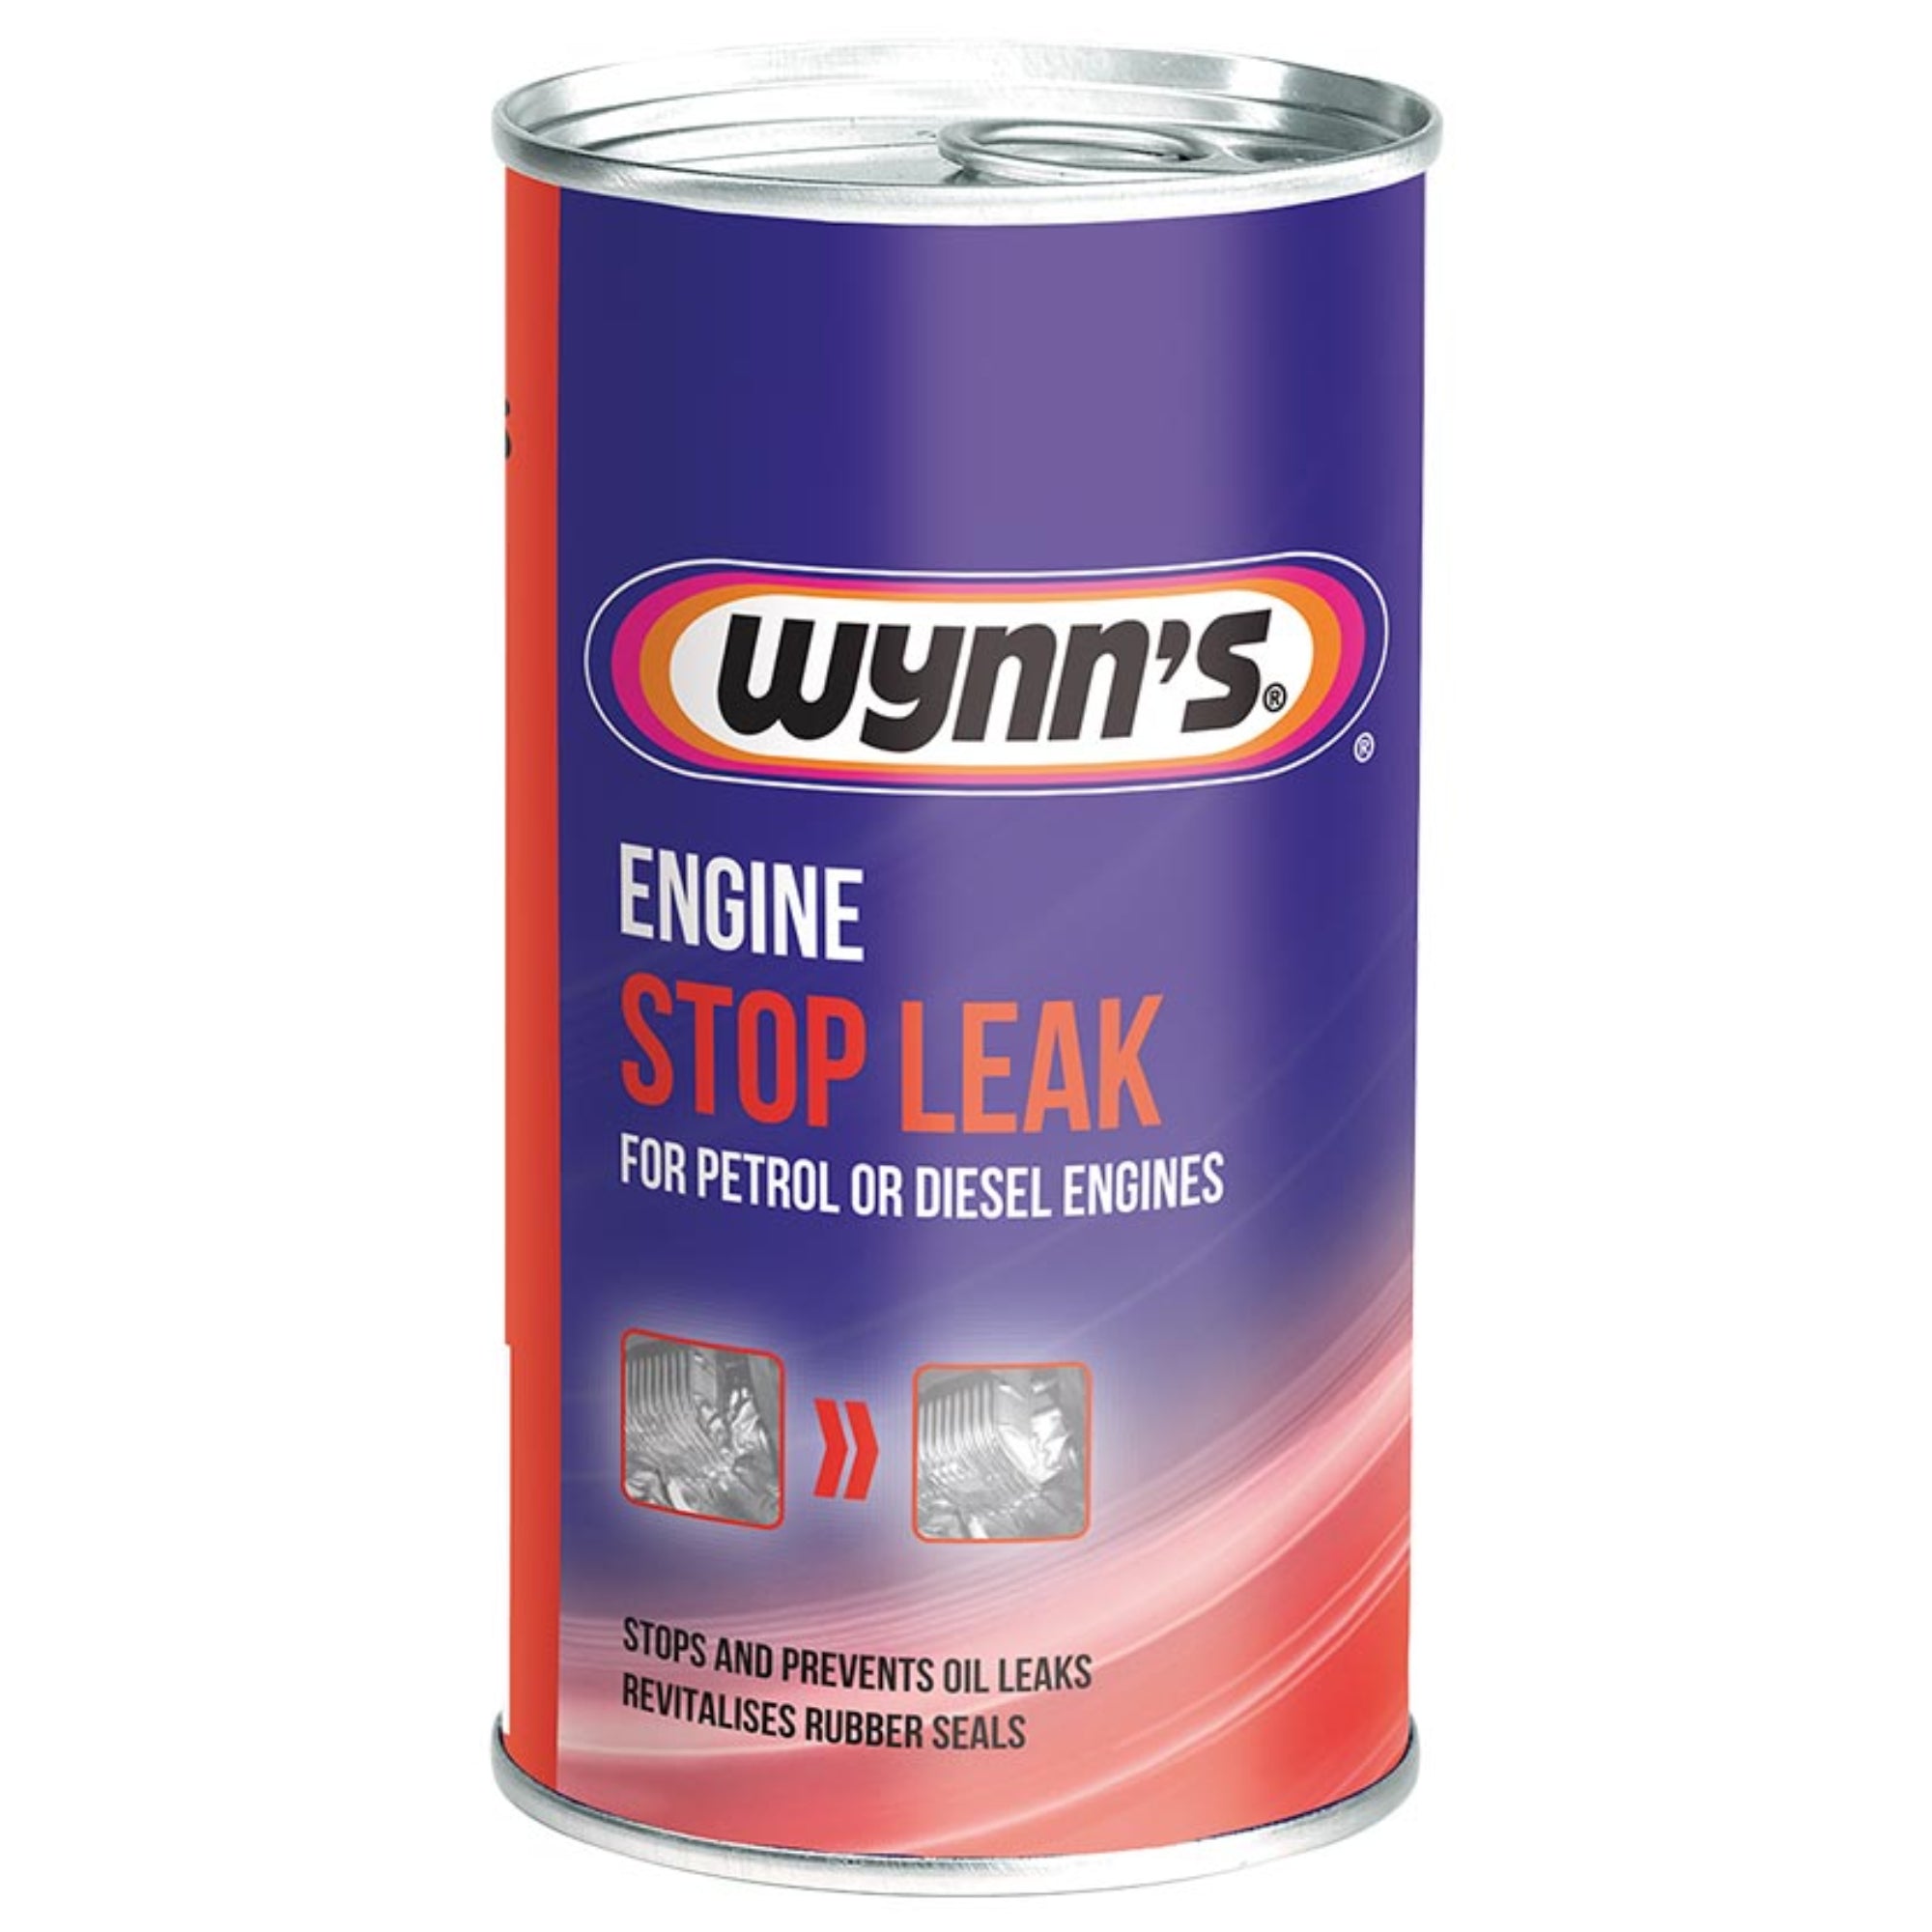 Wynn's Engine Stop Leak For Petrol Or Diesel Engines 325ml